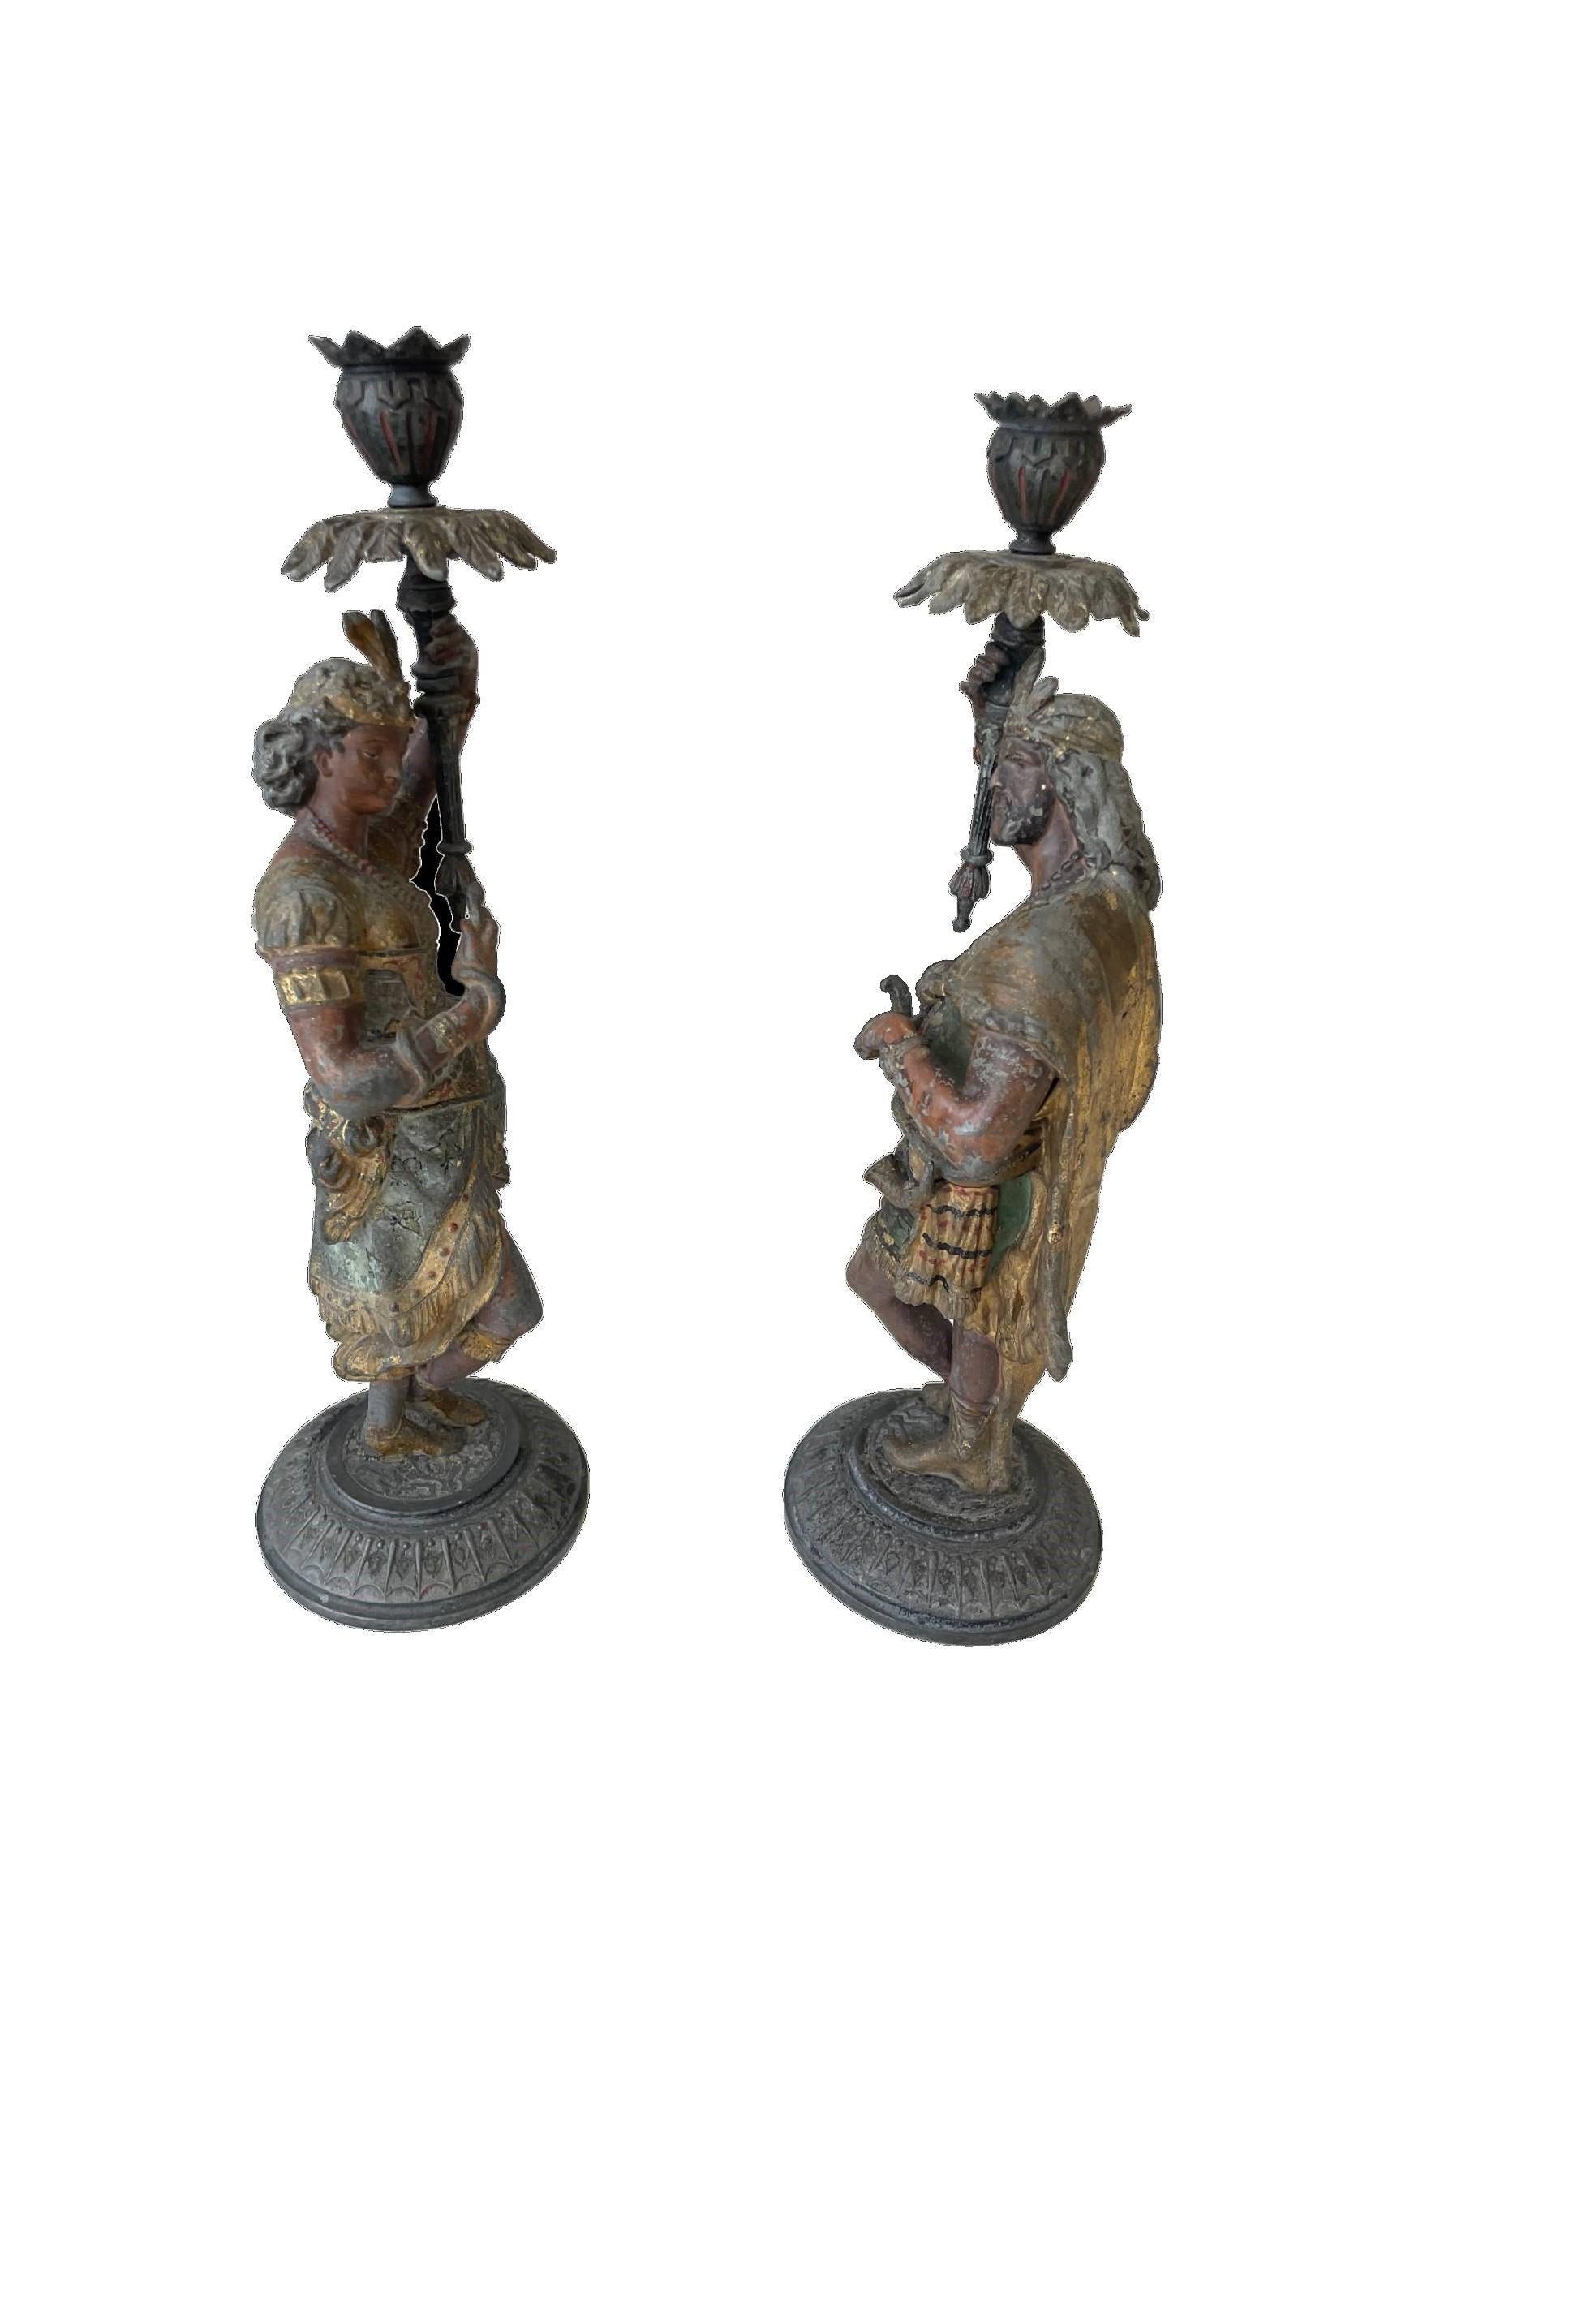 Ein auffallend beeindruckendes Paar figuraler Kerzenhalter, gegossen in Form von fein modellierten männlichen und weiblichen königlichen indischen Figuren. Sie stehen jeweils auf runden Sockeln und halten blumenförmige Gefäße in die Höhe, die als